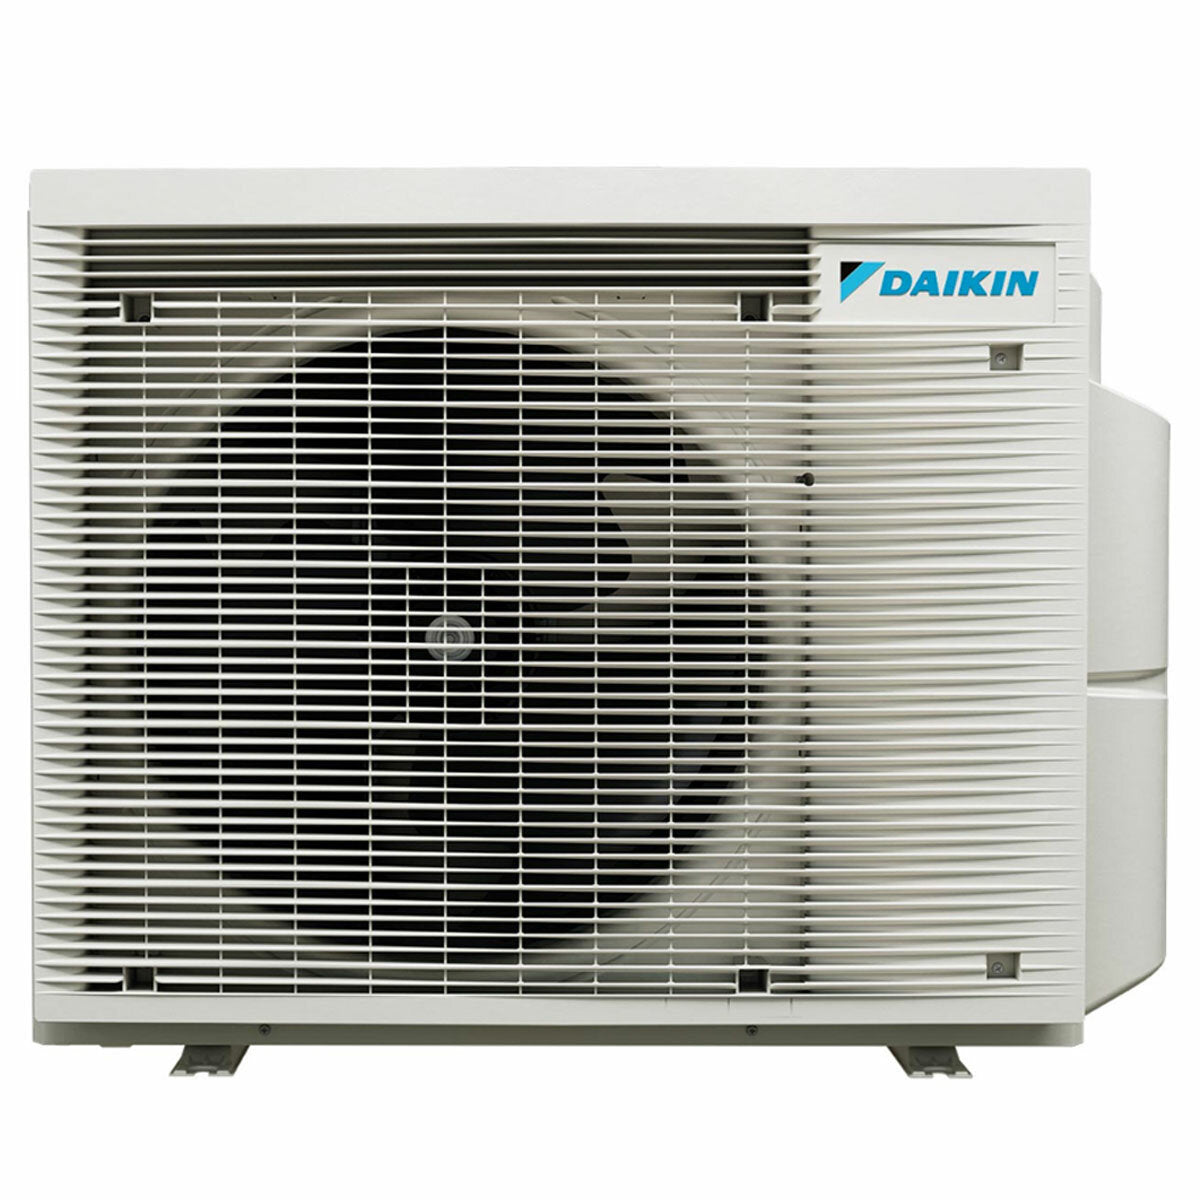 Daikin Emura 3 trial split air conditioner 9000+12000+15000 BTU inverter A+ wifi outdoor unit 6.8 kW Black